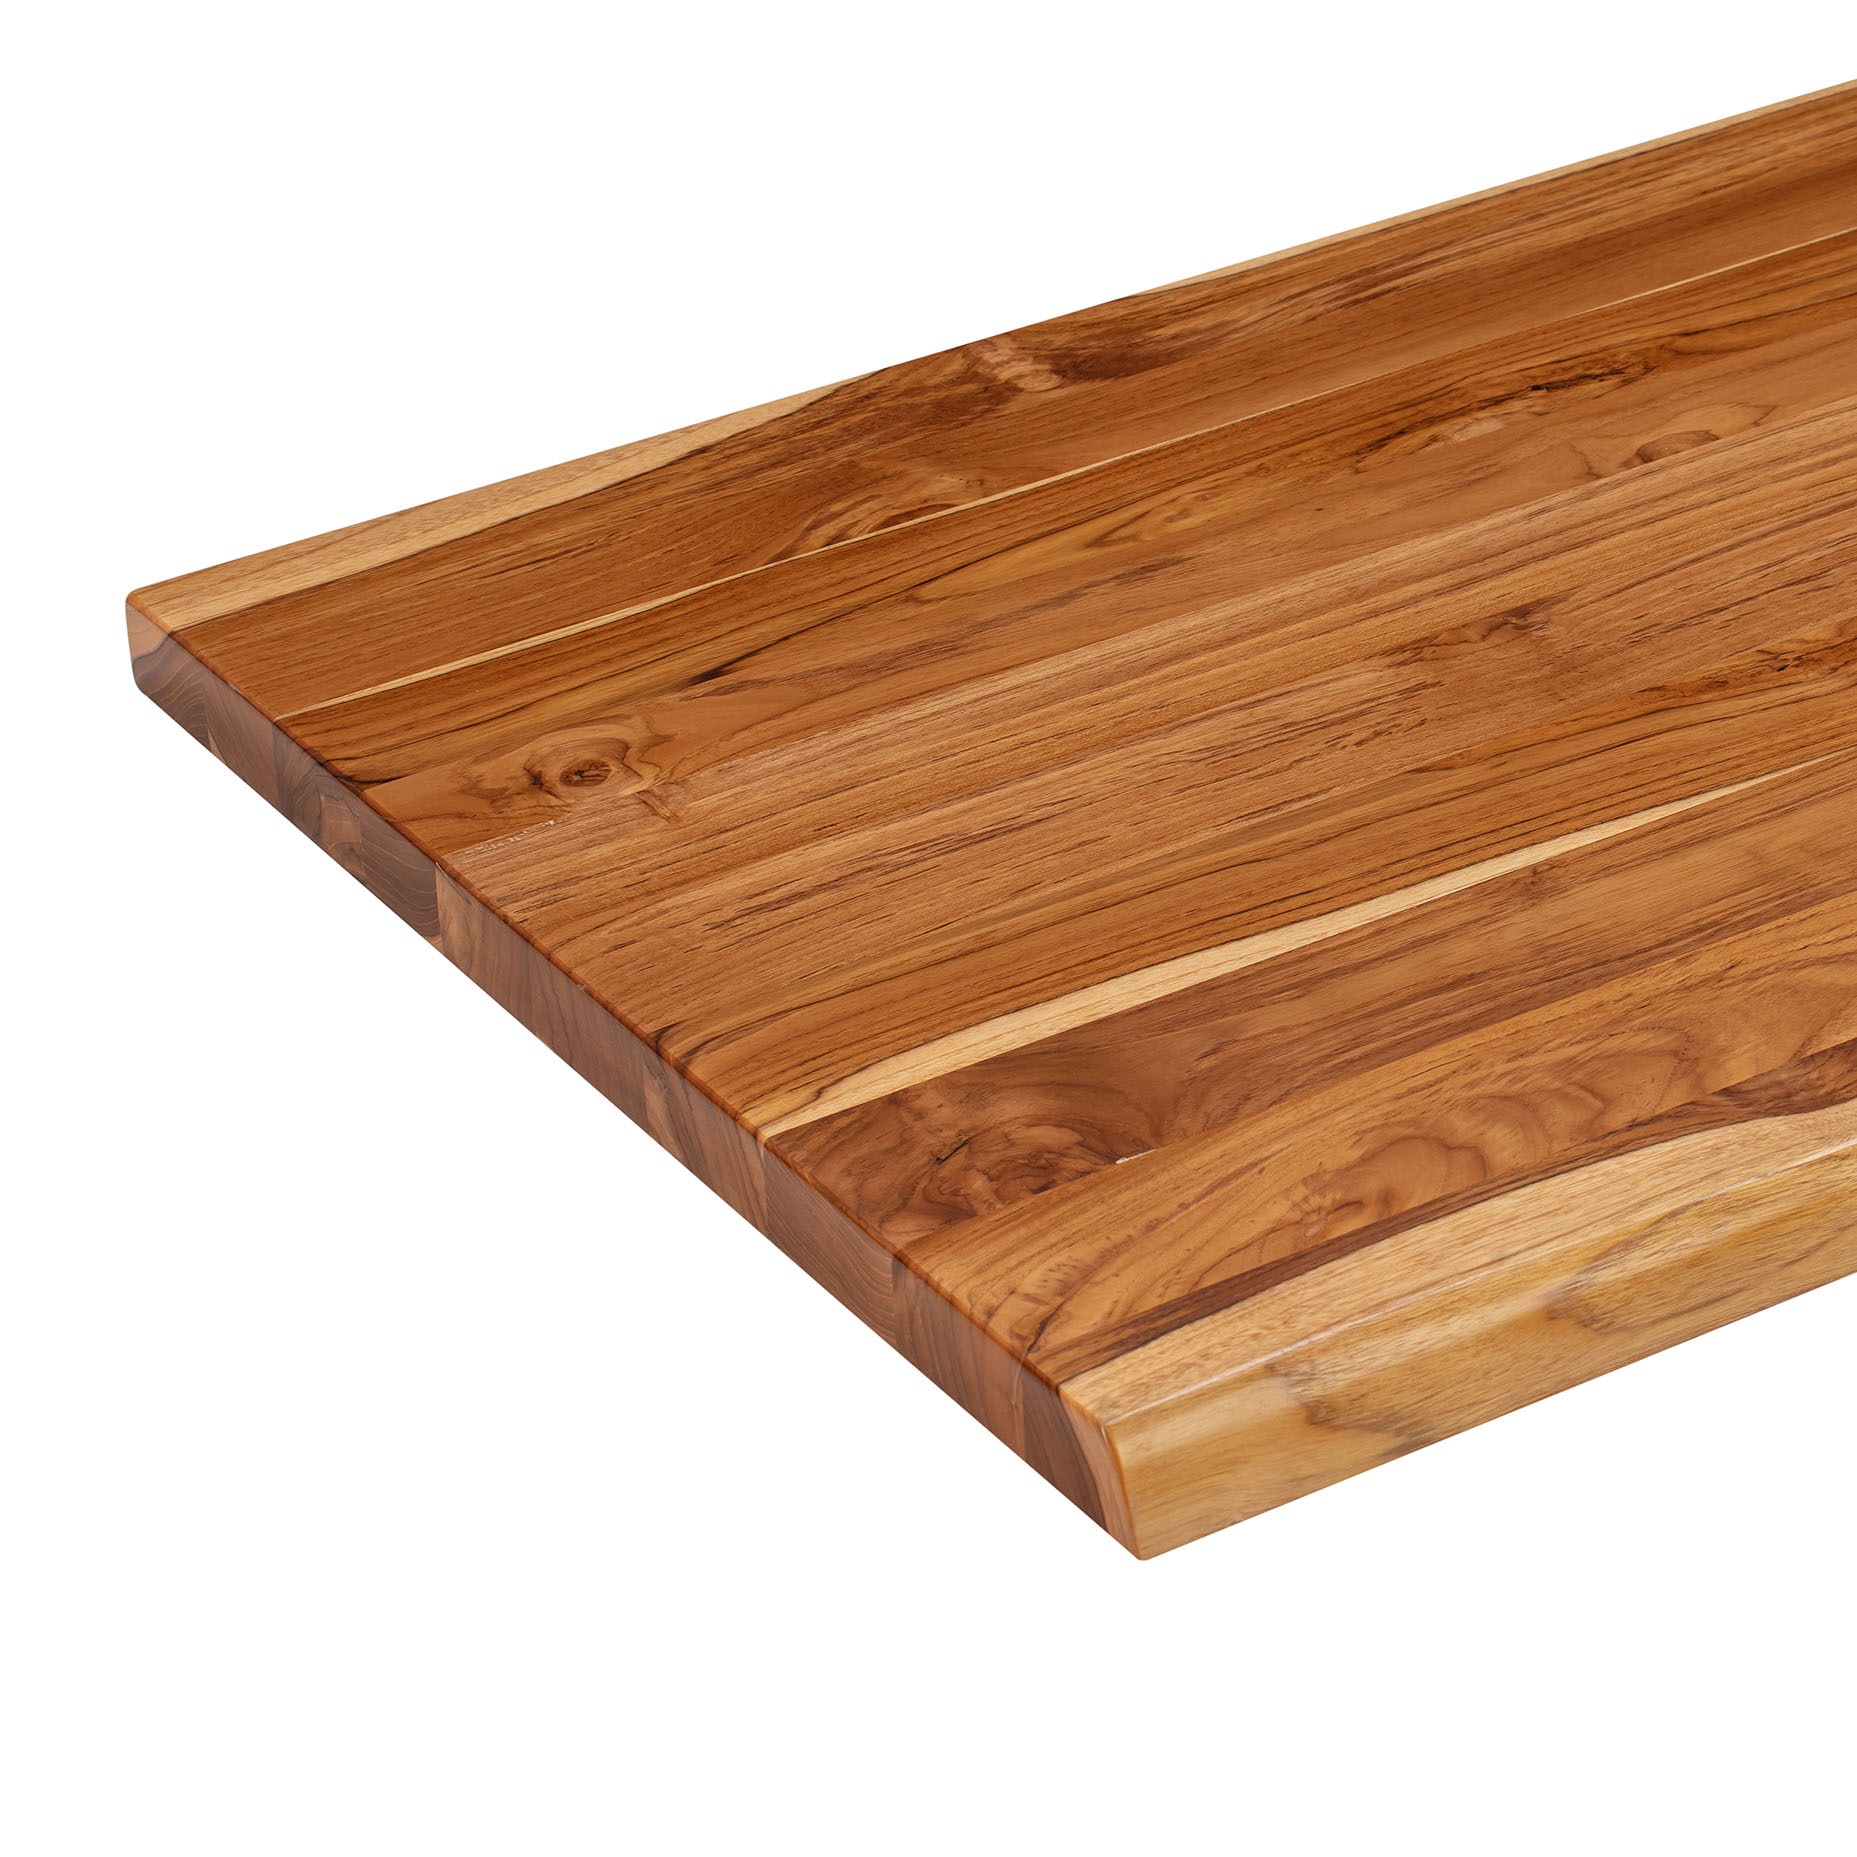 DIY Wood Countertop for $60